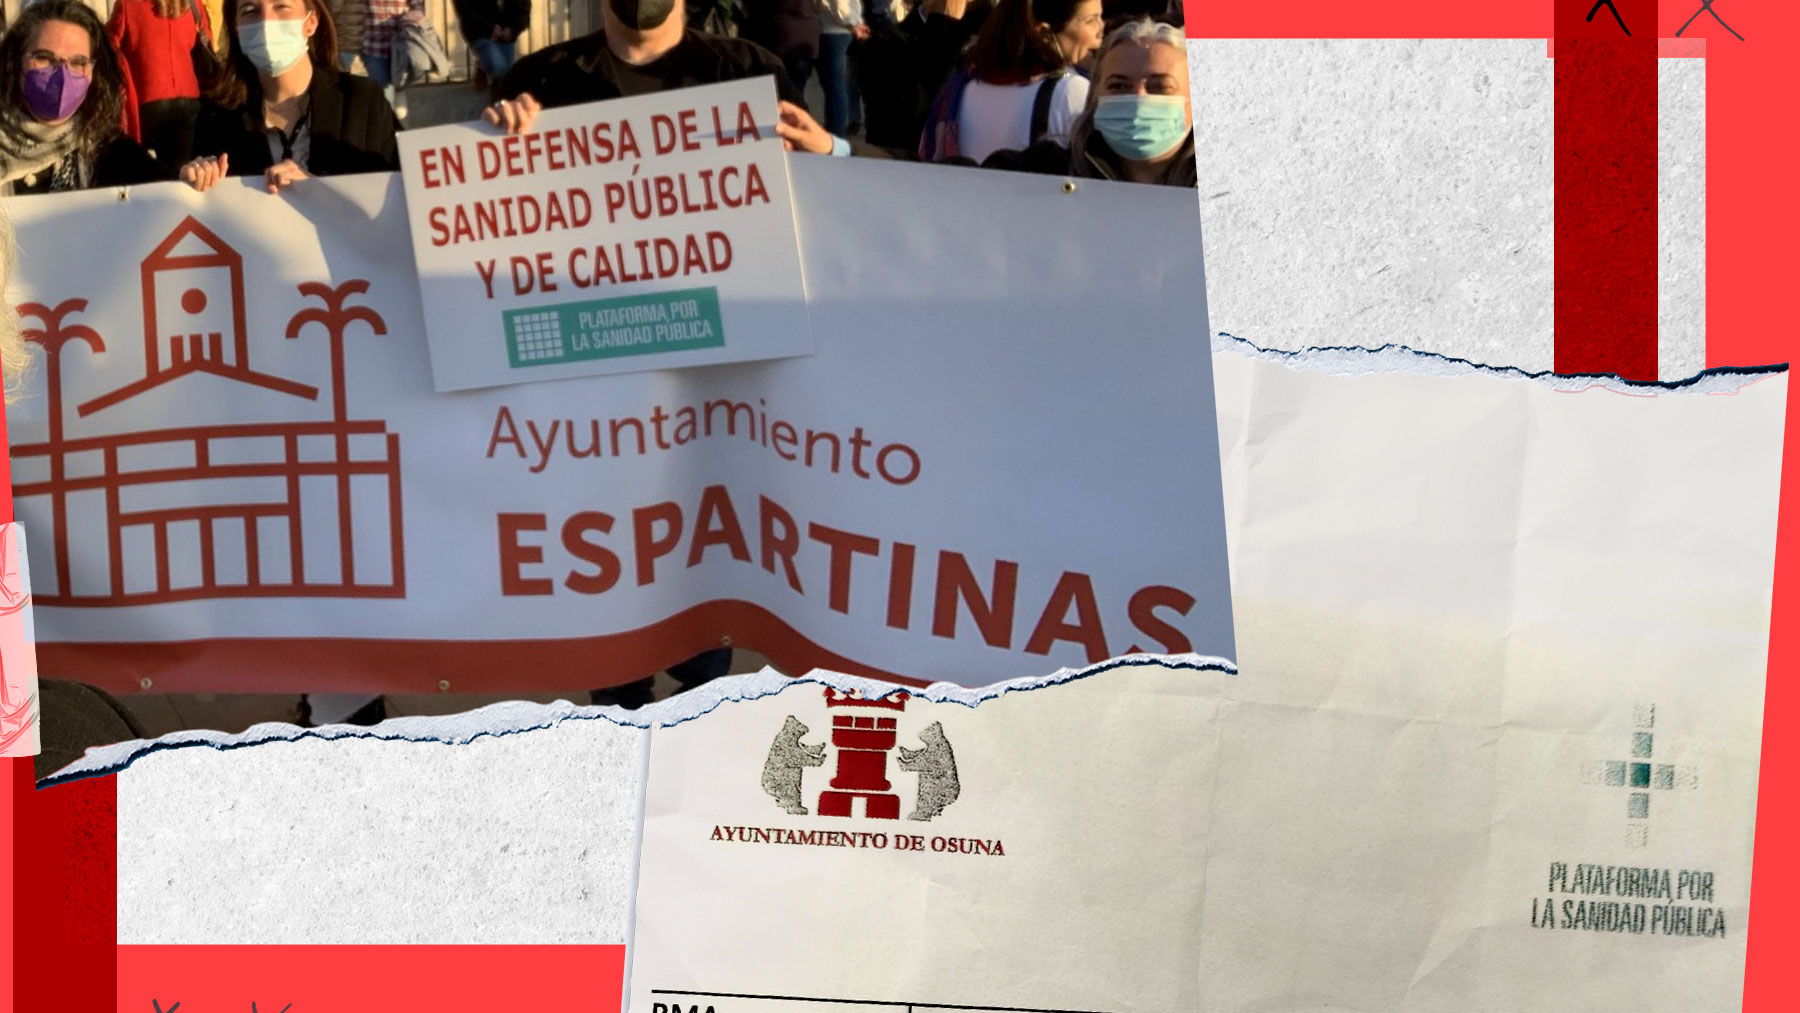 Ayuntamientos de Sevilla emplean fondos públicos para propaganda socialista y campañas contra la Junta.